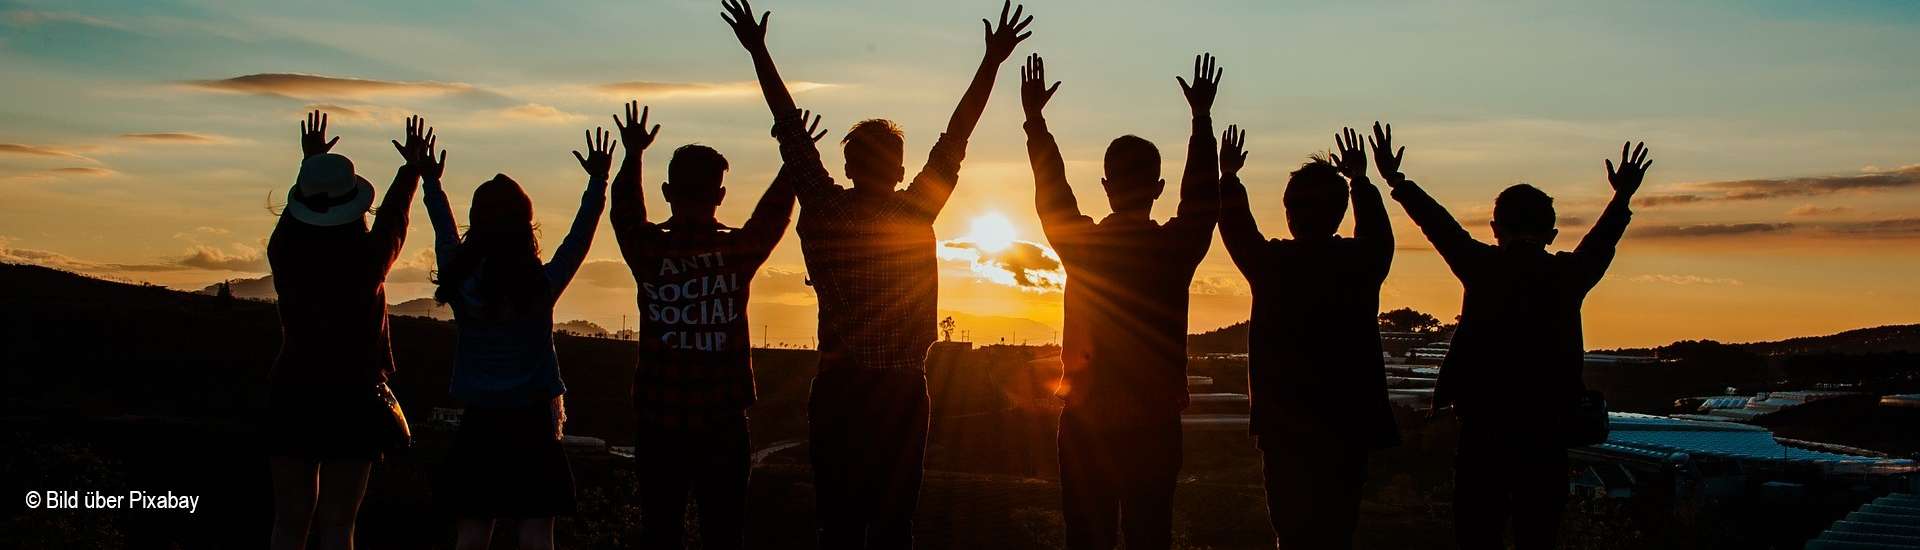 Bei Sonnenuntergang strecken sieben junge Menschen ihre Arme in die Luft